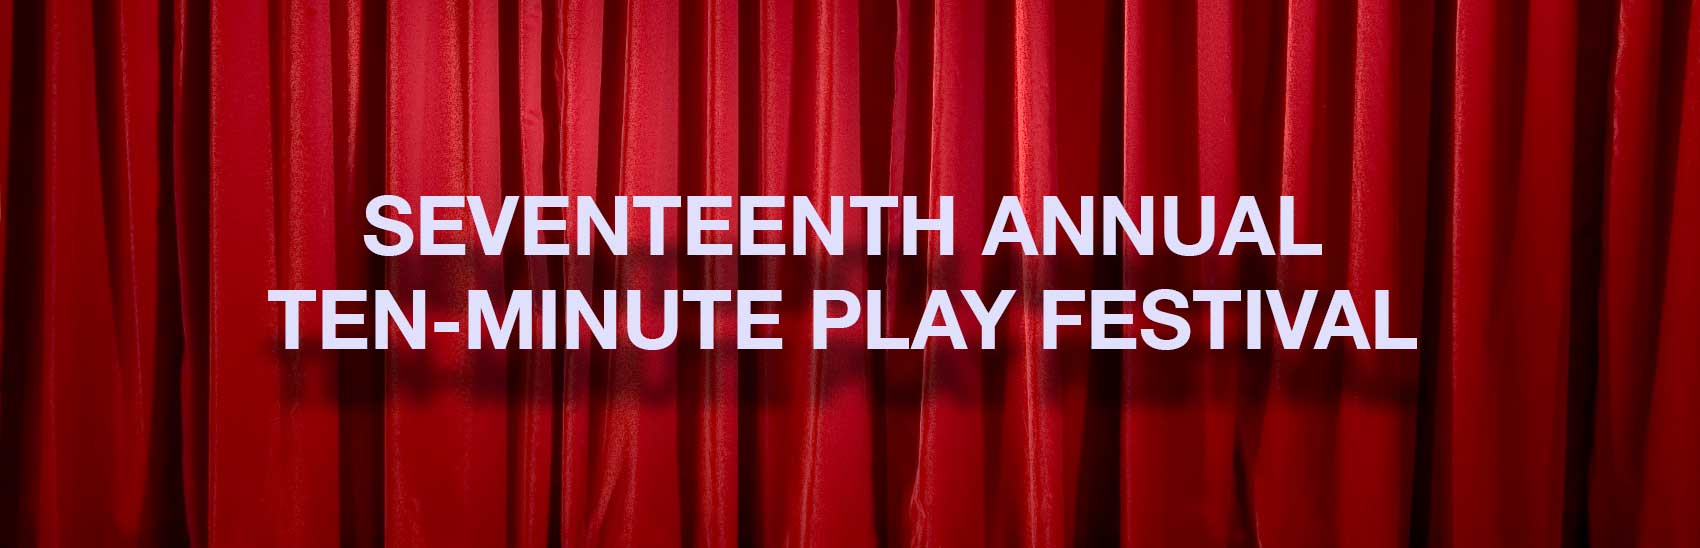 17th annual ten-minute play festival